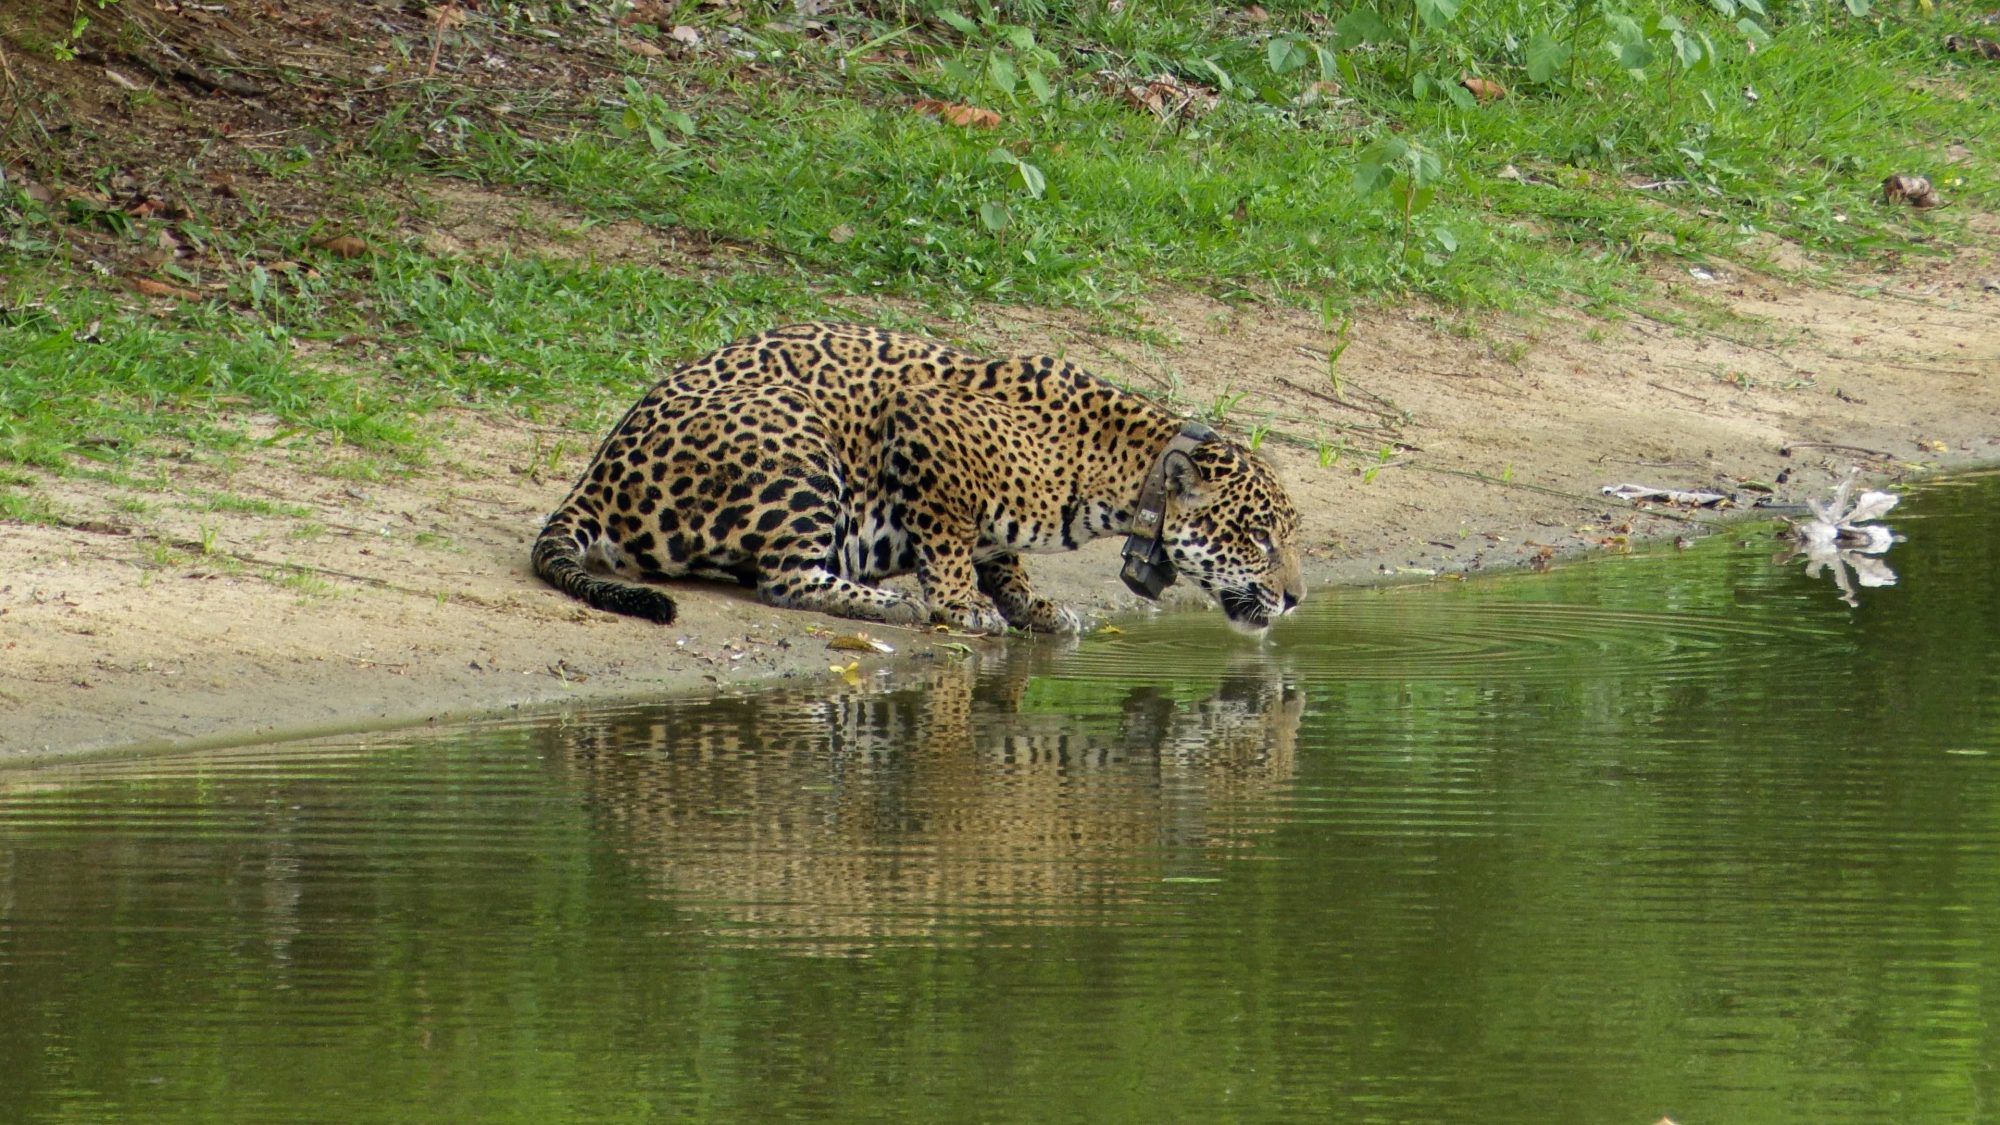 Jaguar by the waterhole – Pantanal, Brazil 2019